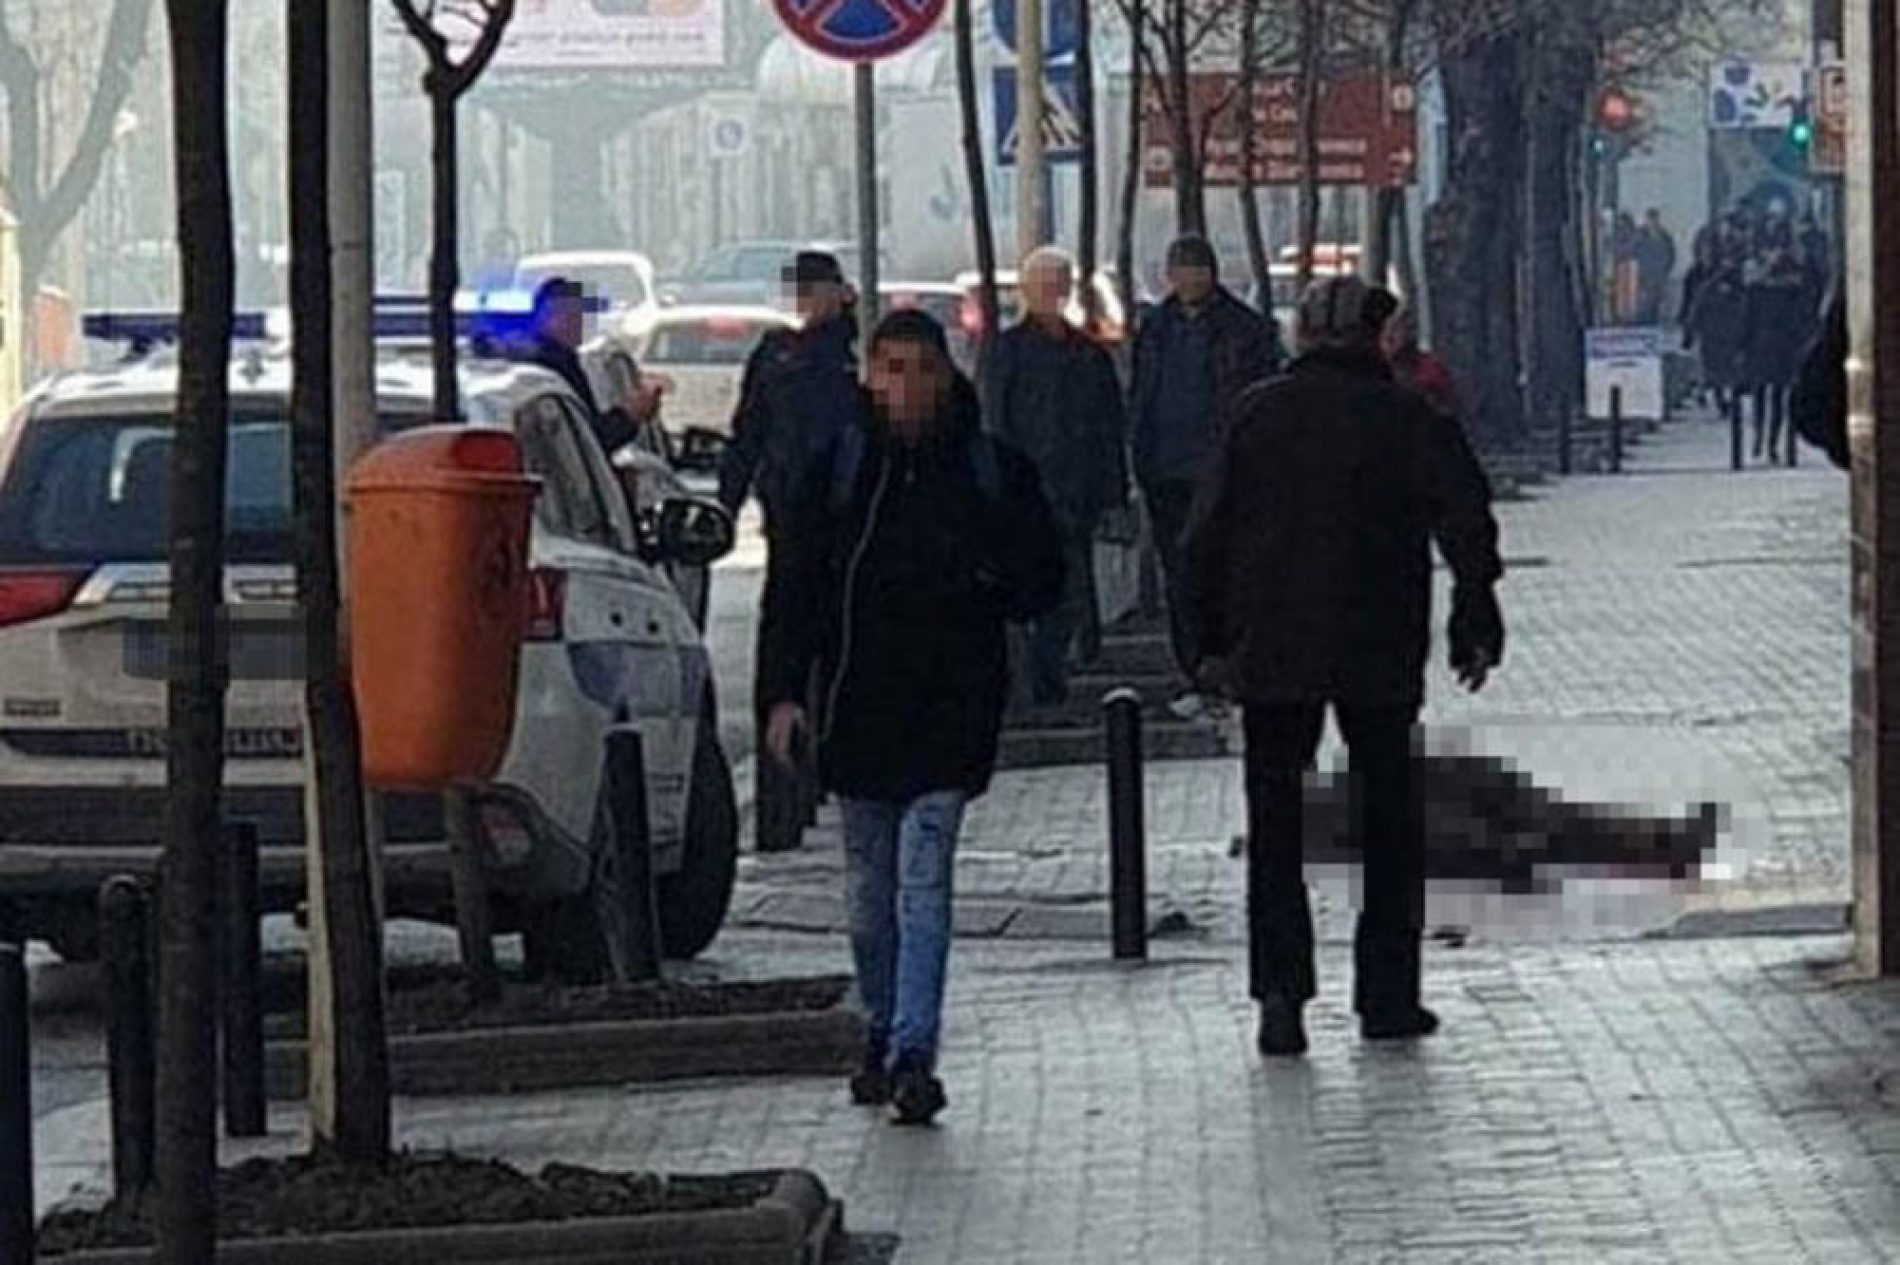 Srbija: Muškarac u maskirnom prerezao sebi vrat pred očima prolaznika